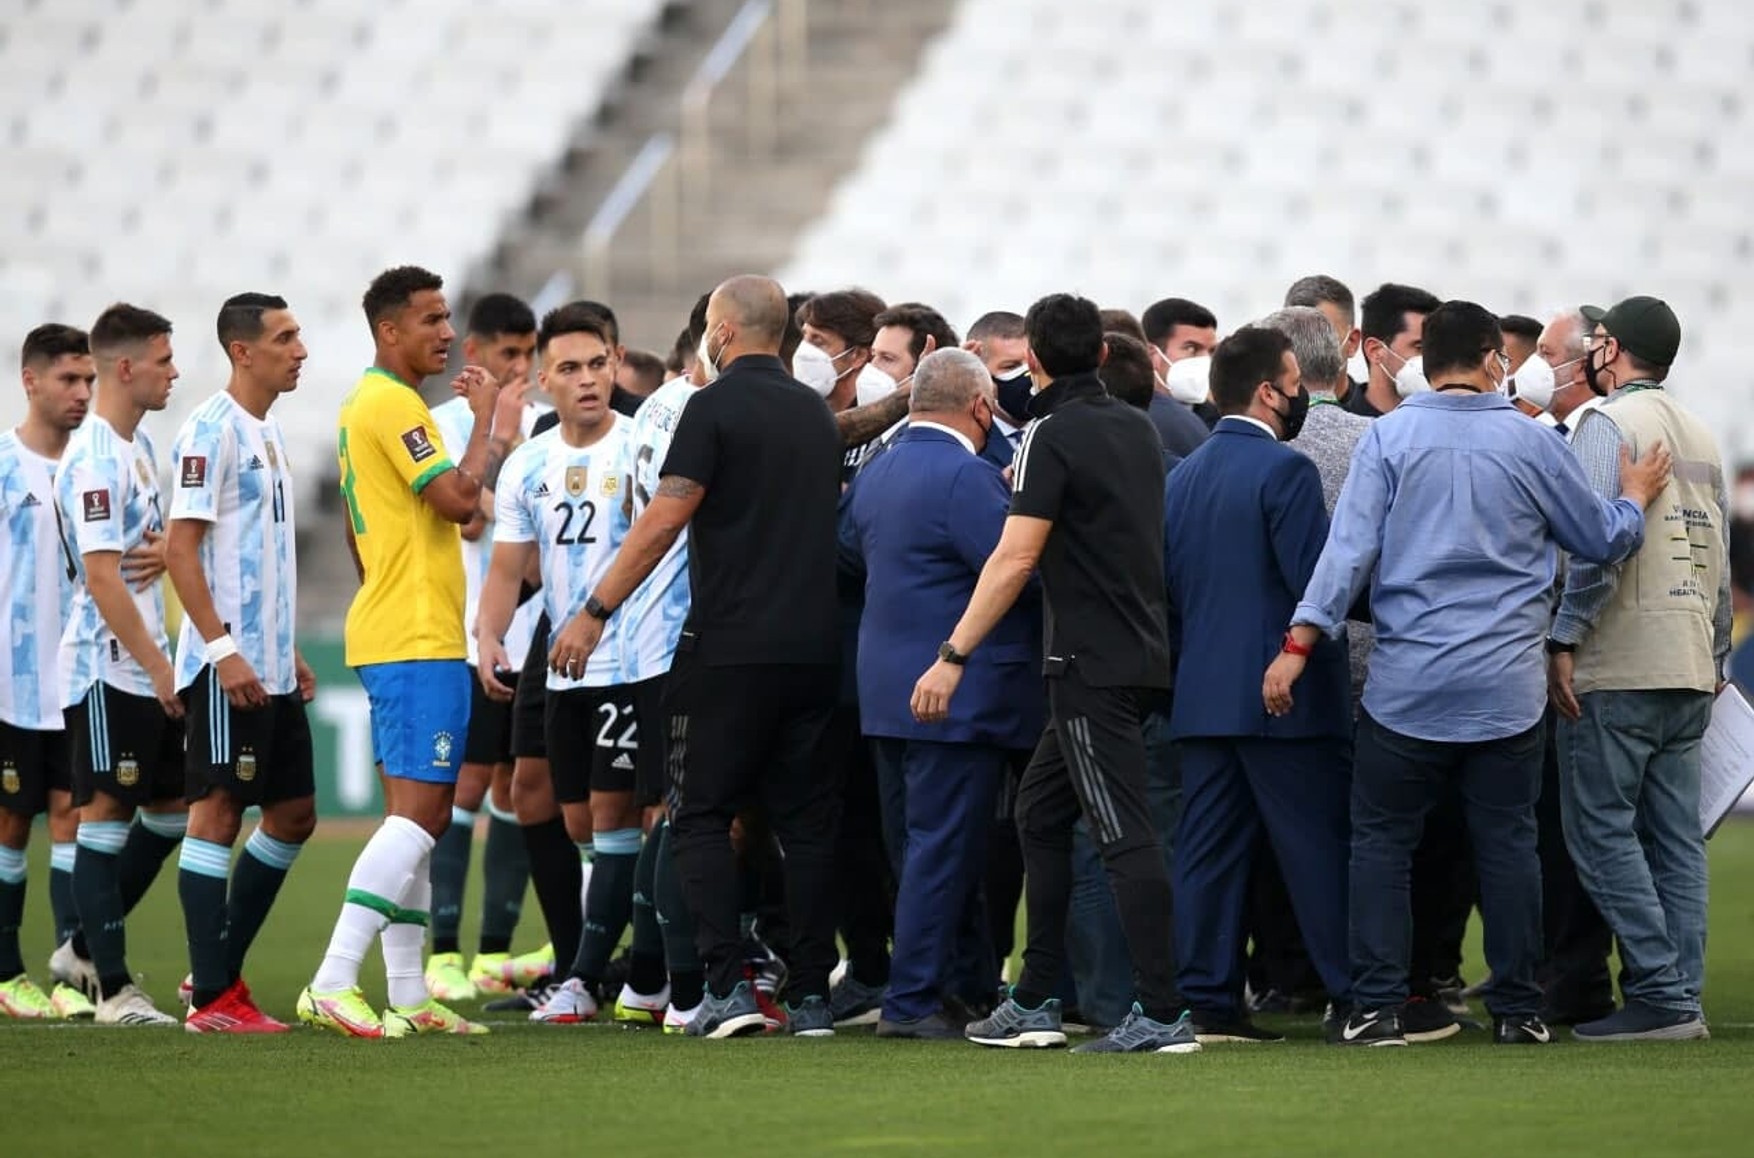 Поліція зупинила футбольний матч між Бразилією та Аргентиною через 4 гравців, яких підозрюють в порушенні карантинних правил